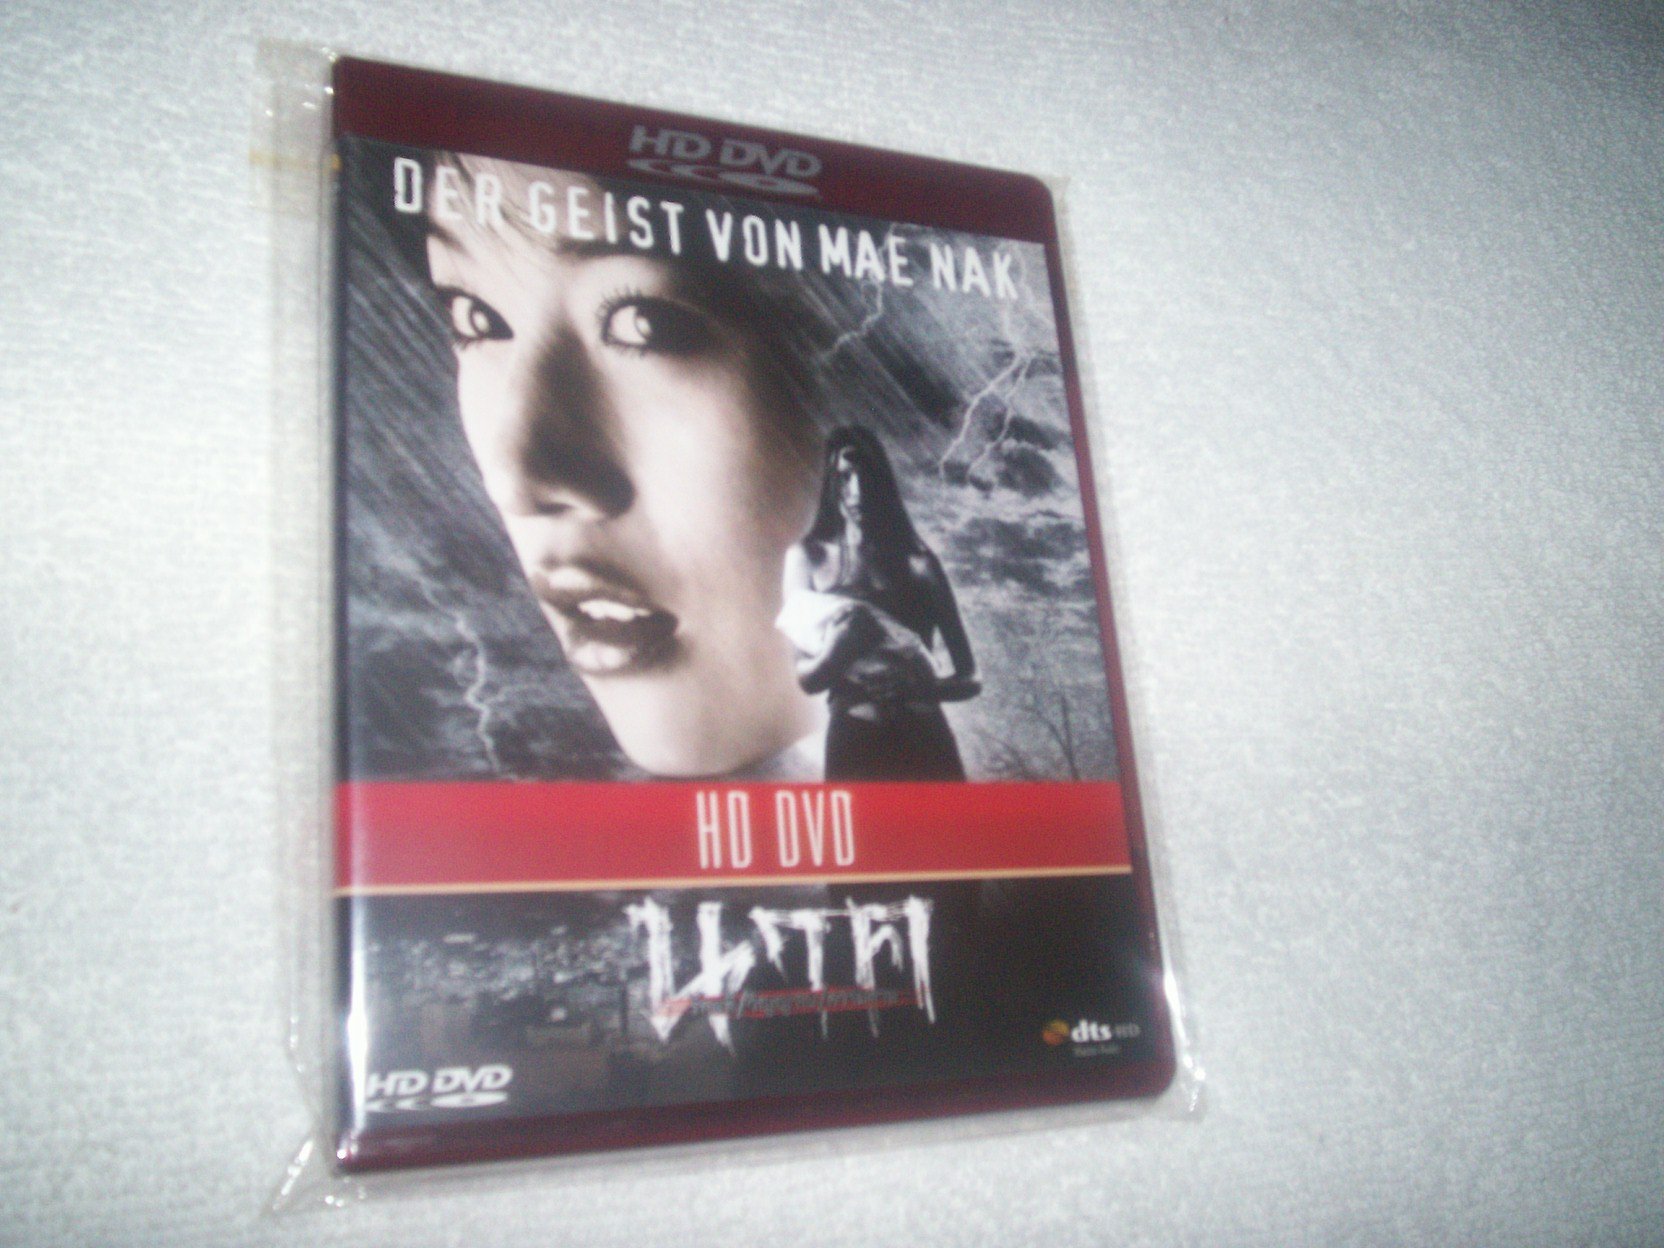 Der Geist von Mae Nak [HD DVD]